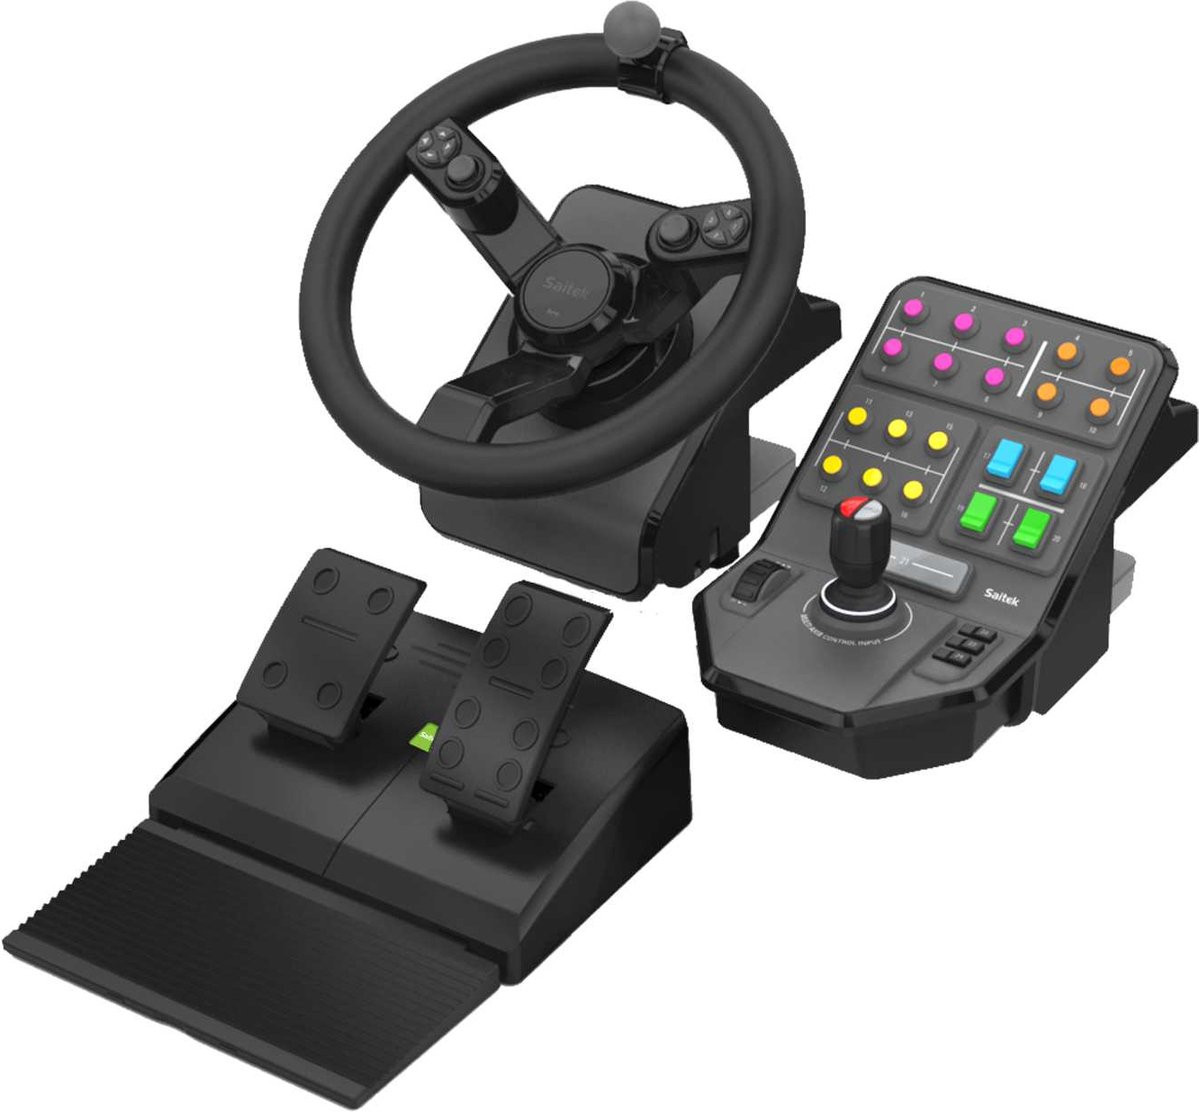 Test Logitech G920, volant et pédalier haut de gamme pour Xbox One et PC -  Les Numériques